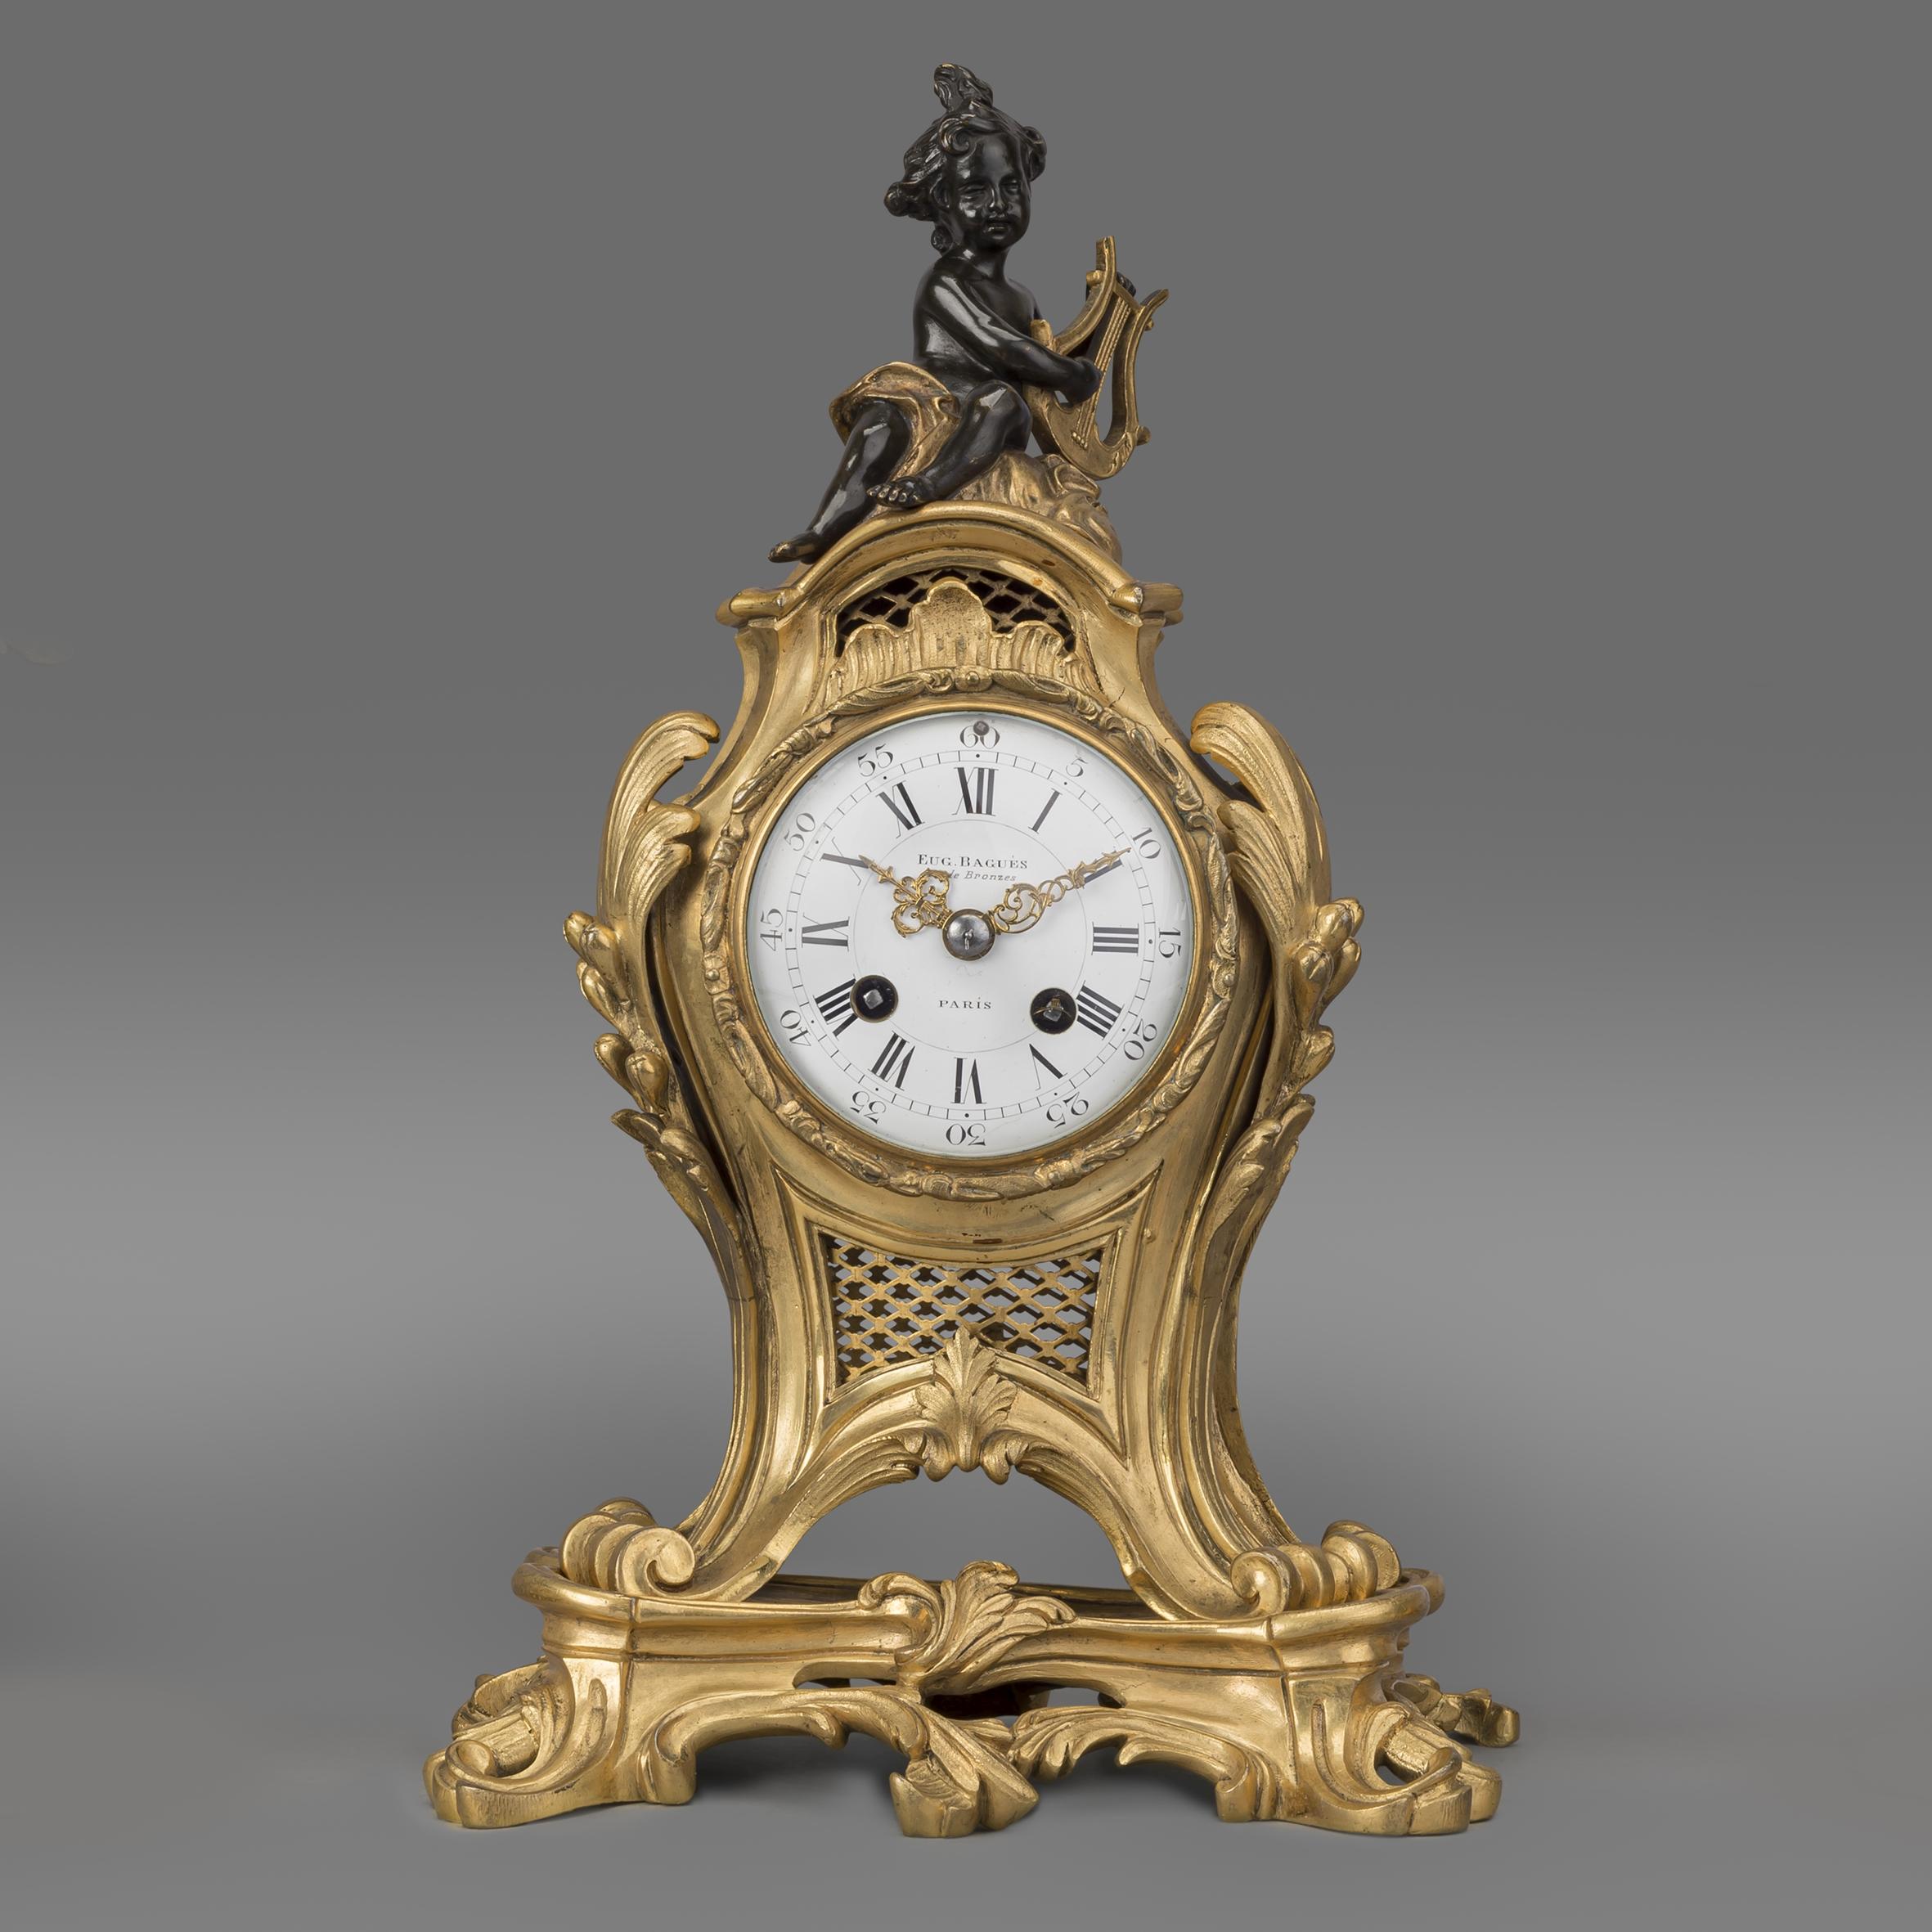 Garniture de pendule figurative de style Louis XV en bronze doré et patiné de la Maison Baguès. 

Ce rare exemple de garniture d'horloge de la Maison Baguès possède un mouvement de huit jours à deux trains sonnant sur une cloche. 

La garniture